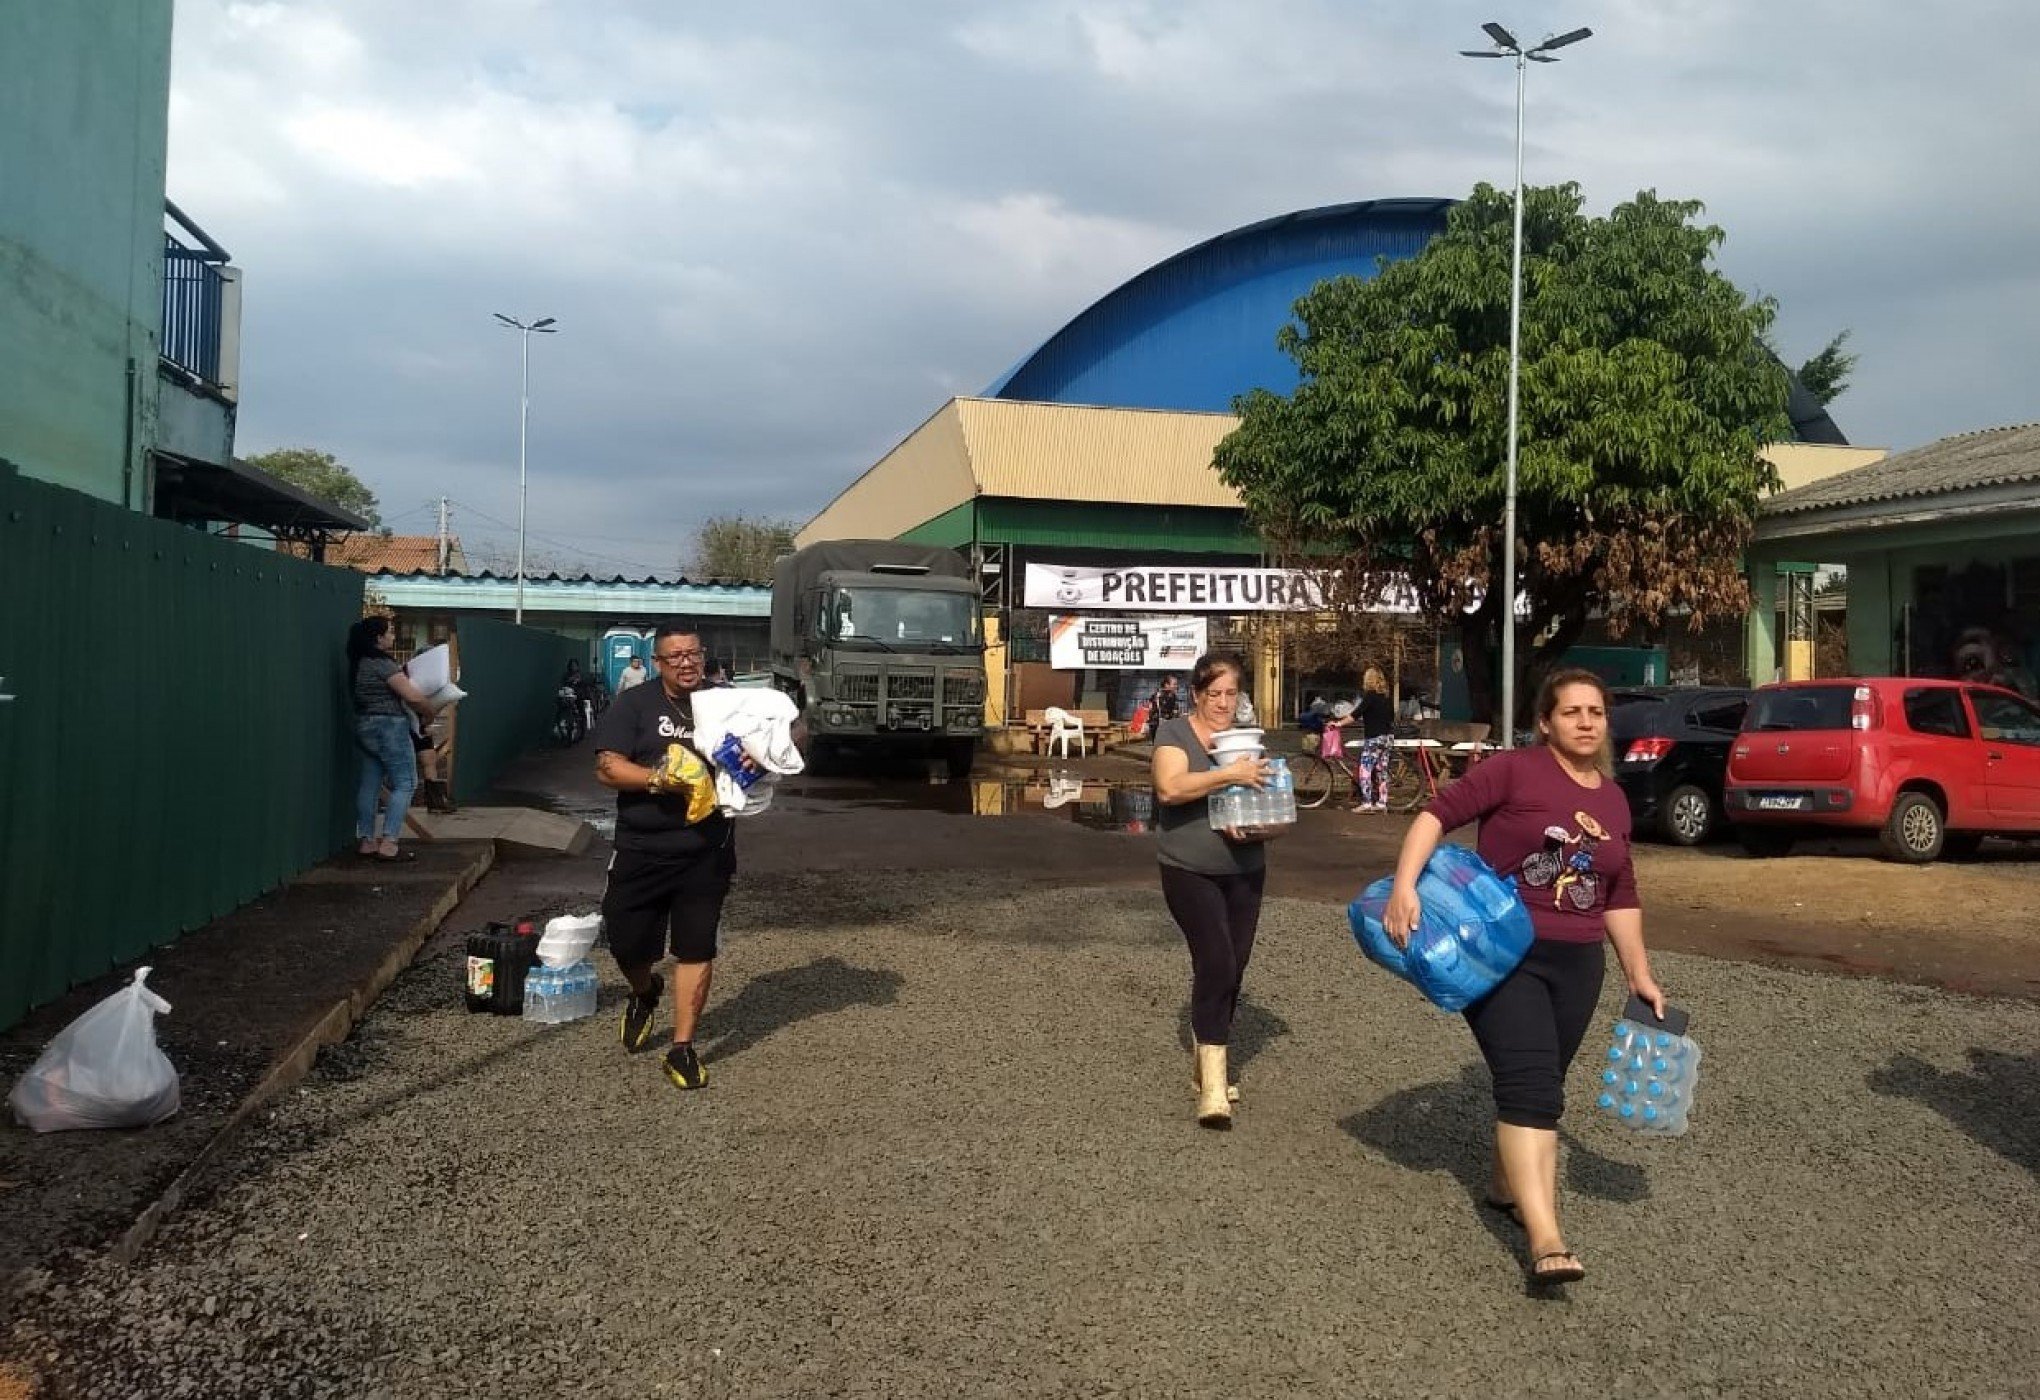 "Agora estão pertinho de quem precisa", diz moradora ao pegar doações em centro de Canoas